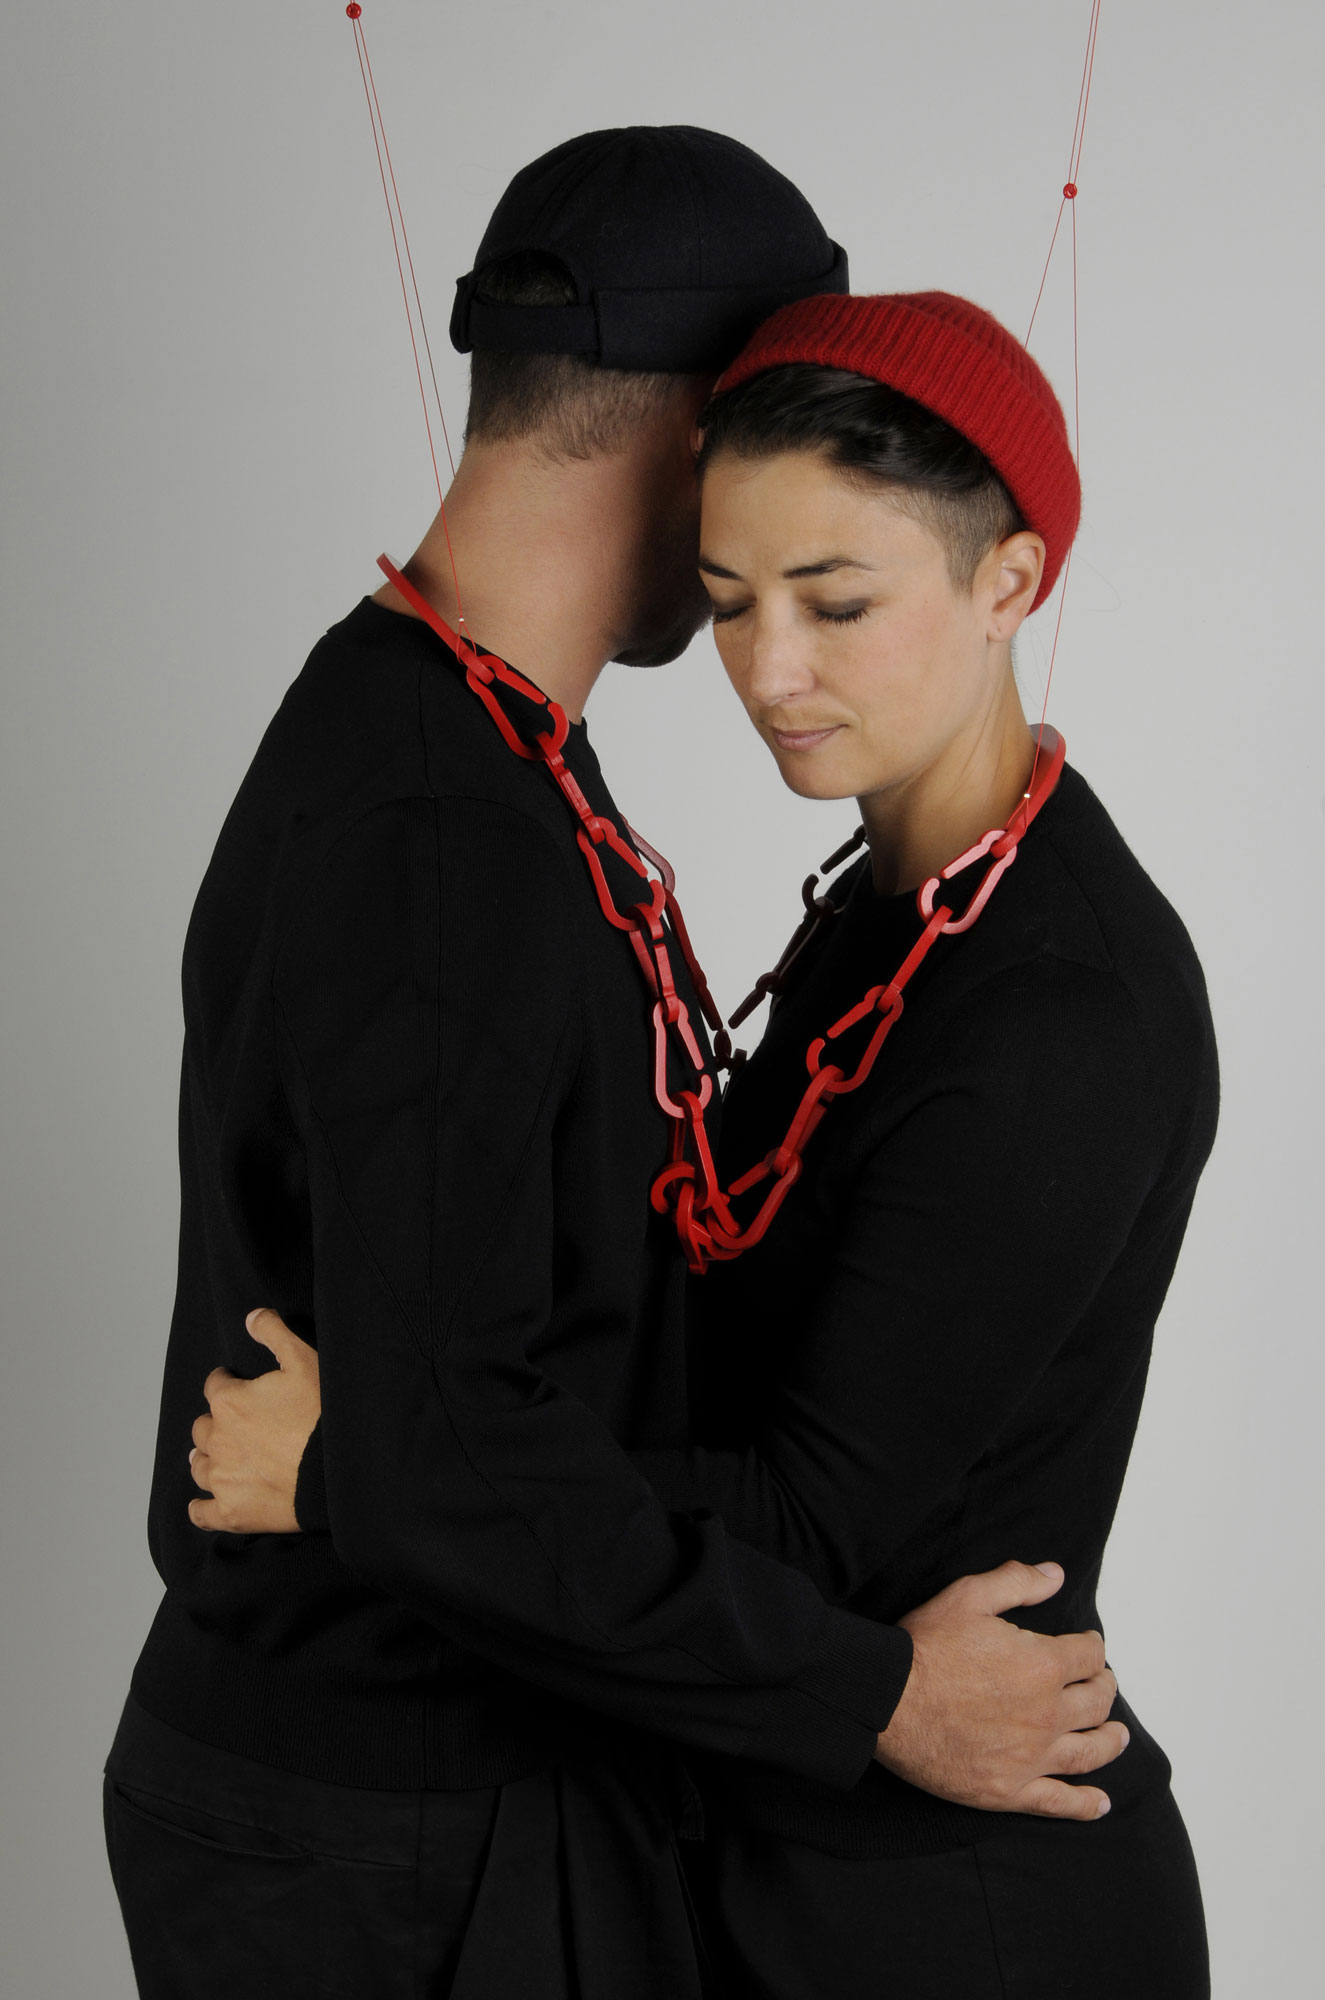 THE HUG de la collection OXYTOCIN (RED IS THE COLOR OF LOVE) en collaboration avec Alejandro Ruiz, collier pour 2 personnes - bois, peinture, corde synthétique, perles à écraser, découpe sur bois -  L.22 x l.30 x h.43 cm - 2020 - Photo : F. Kada